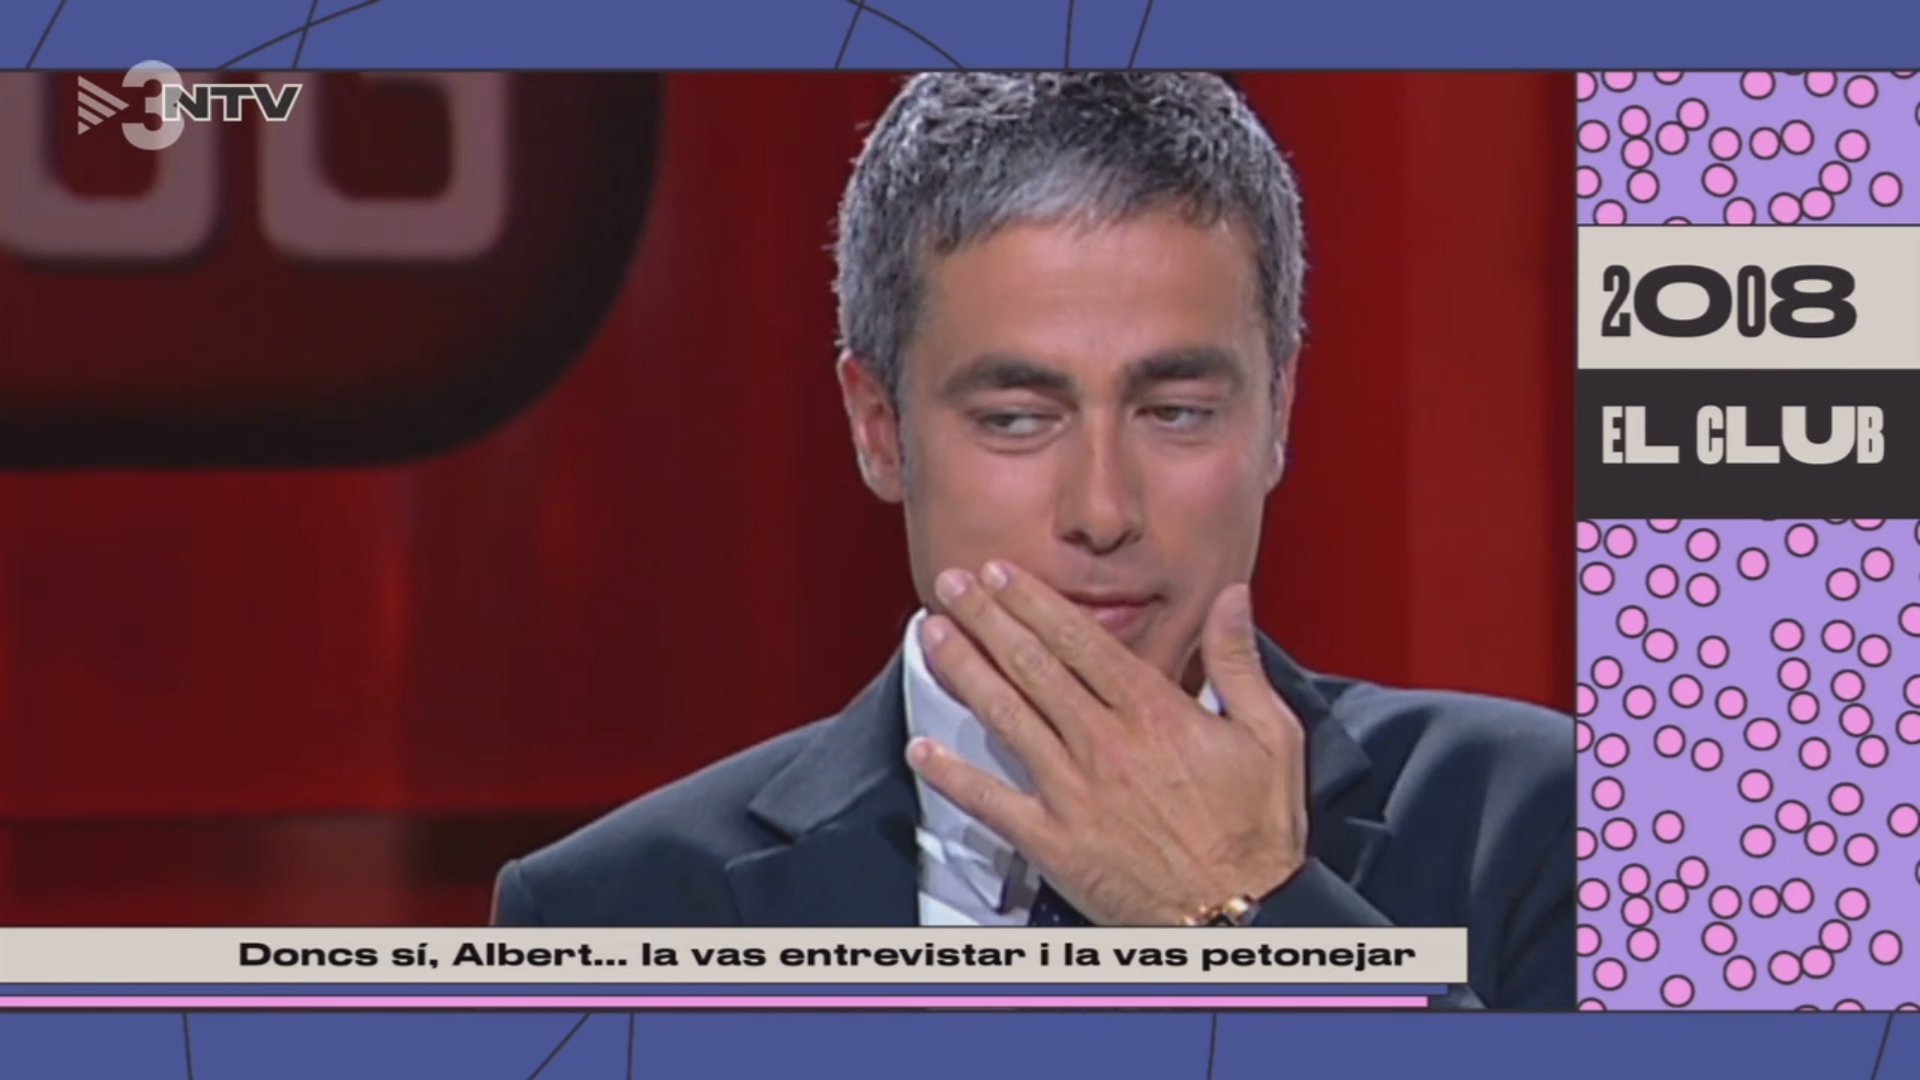 Els petons d'Albert Om a les seves convidades a TV3: De quin no se'n recorda?